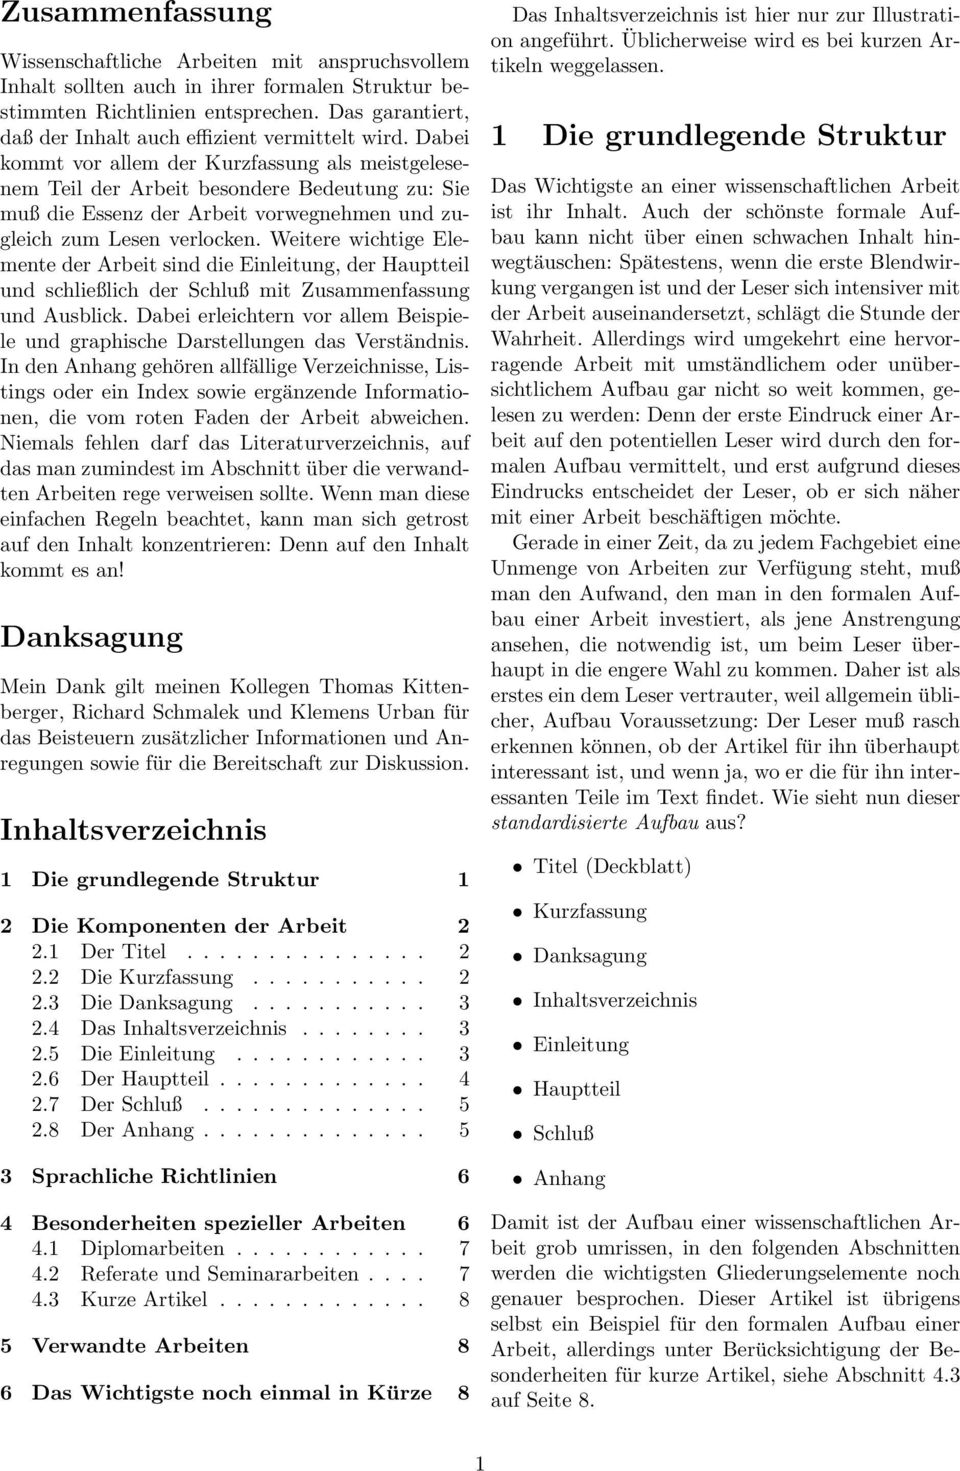 Merkblatt Für Den Aufbau Wissenschaftlicher Arbeiten Pdf